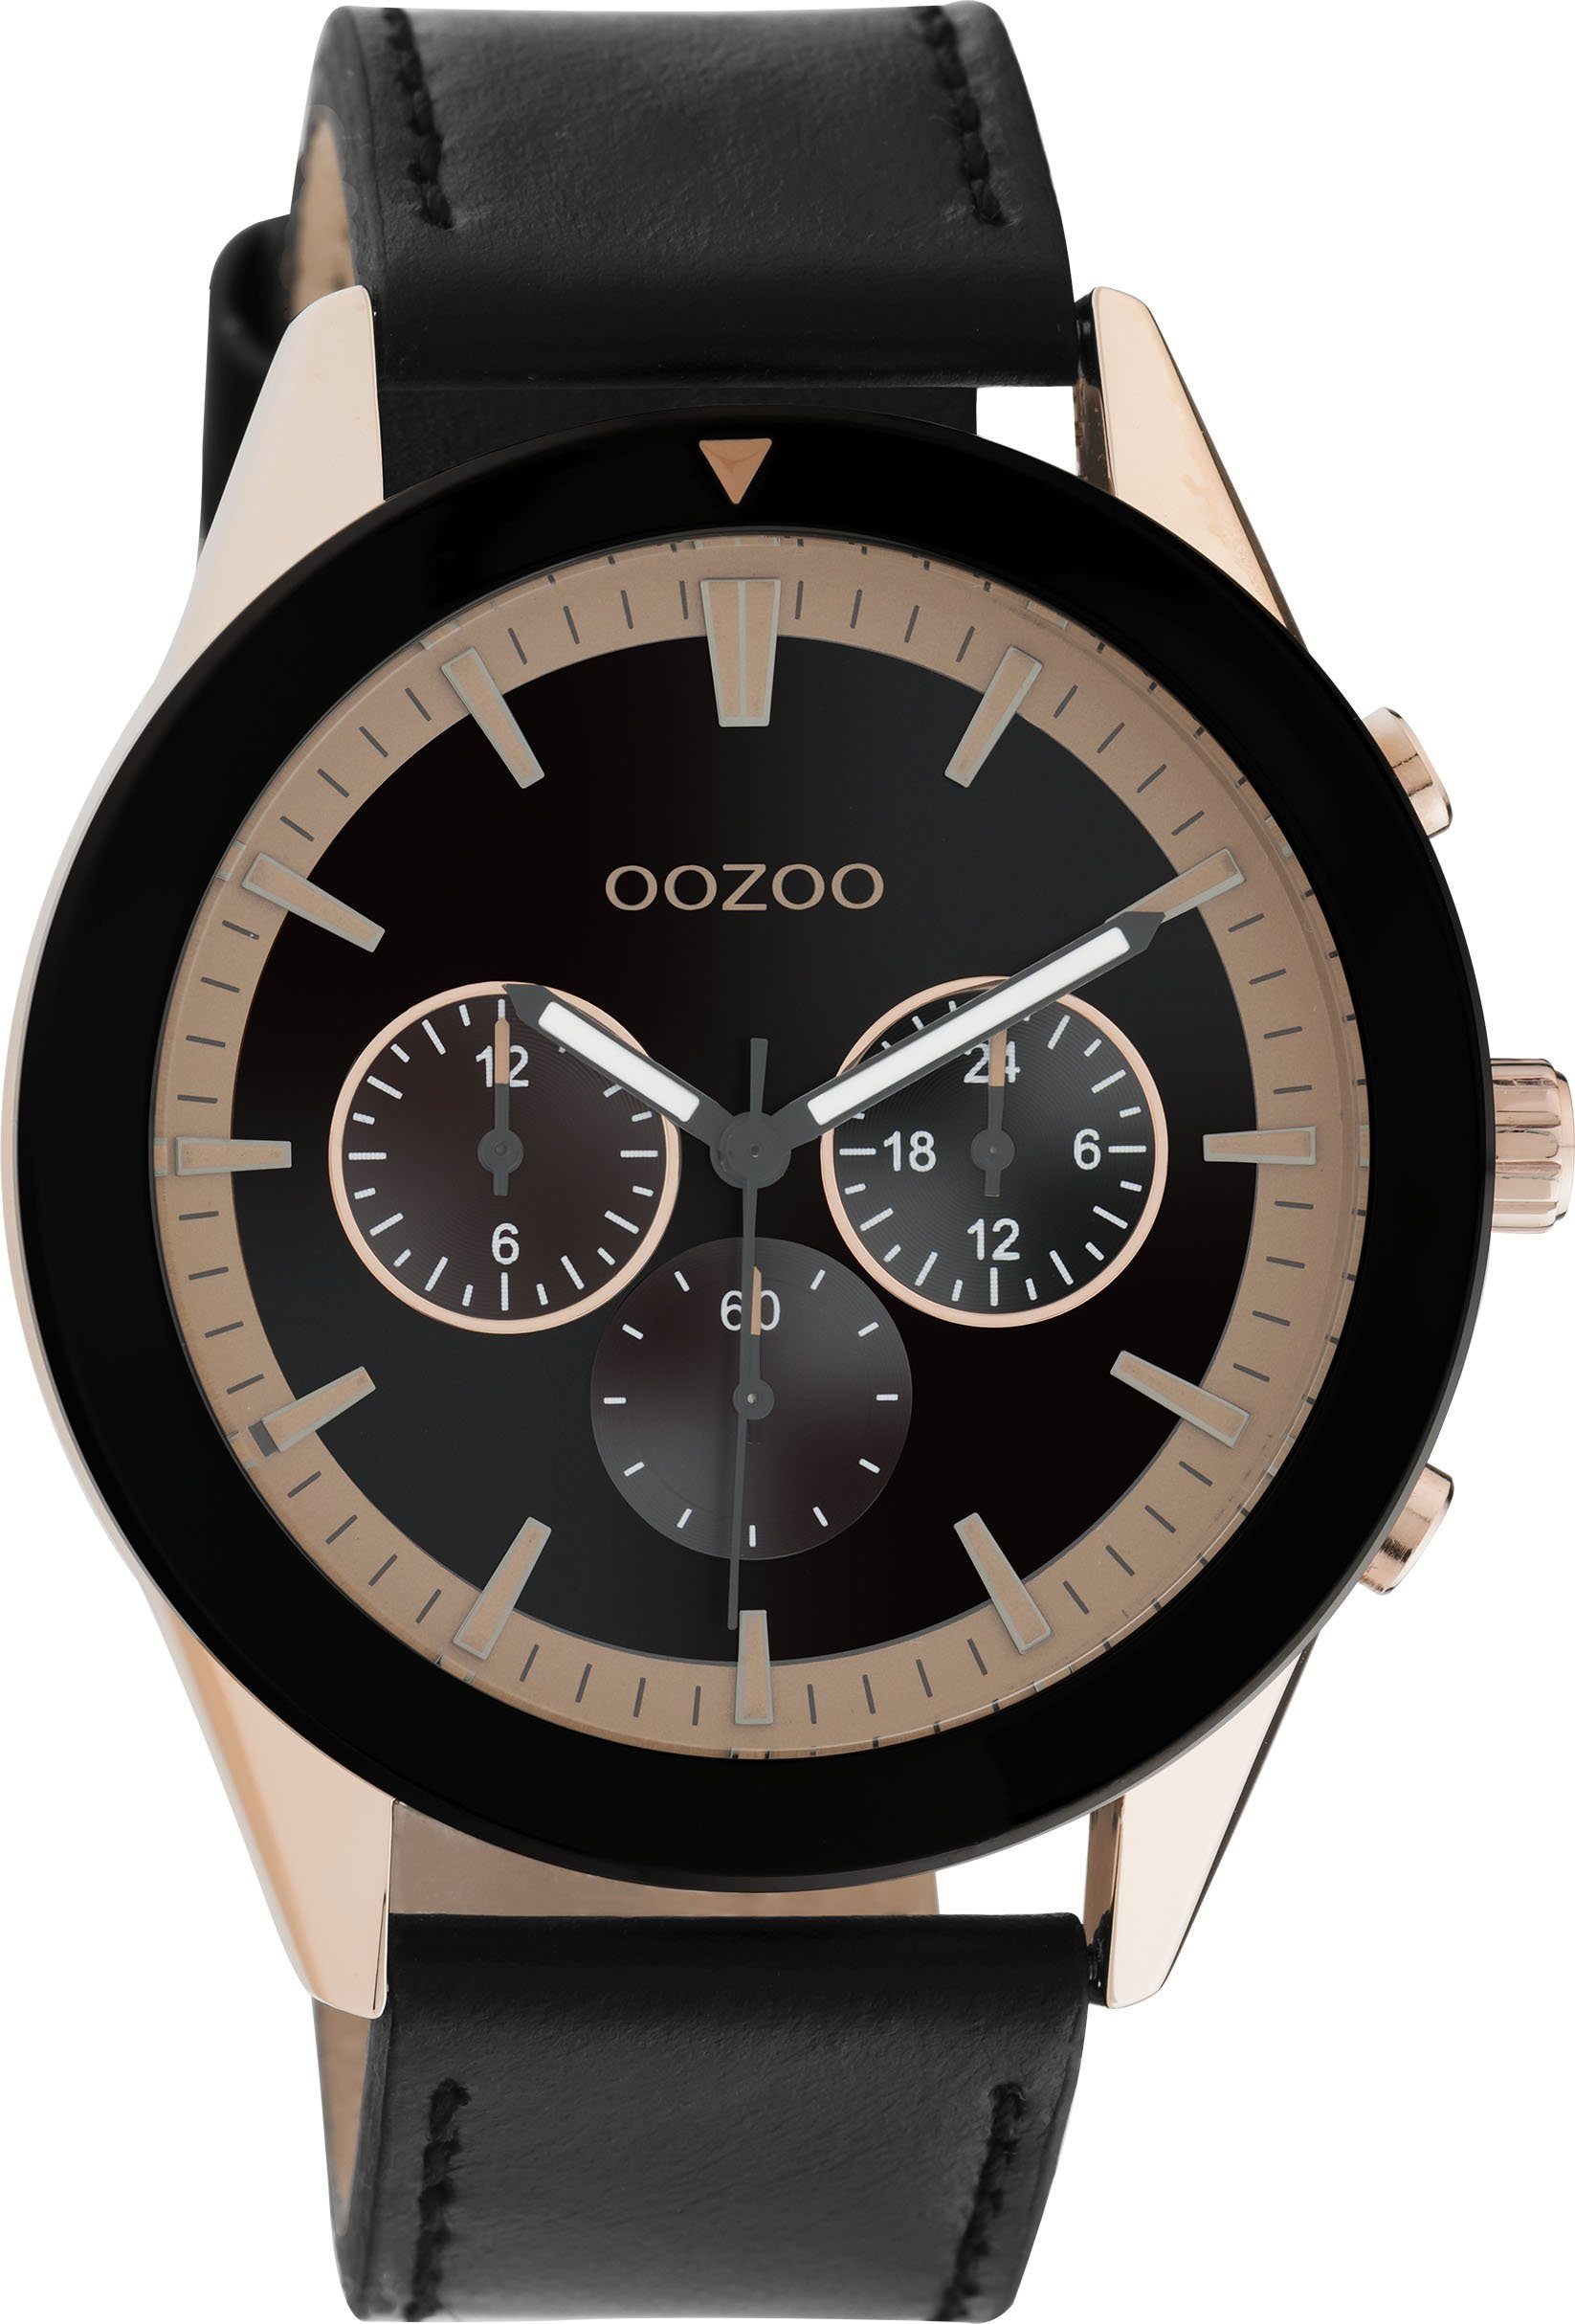 OOZOO Quarzuhr C10804, Armbanduhr, Damenuhr